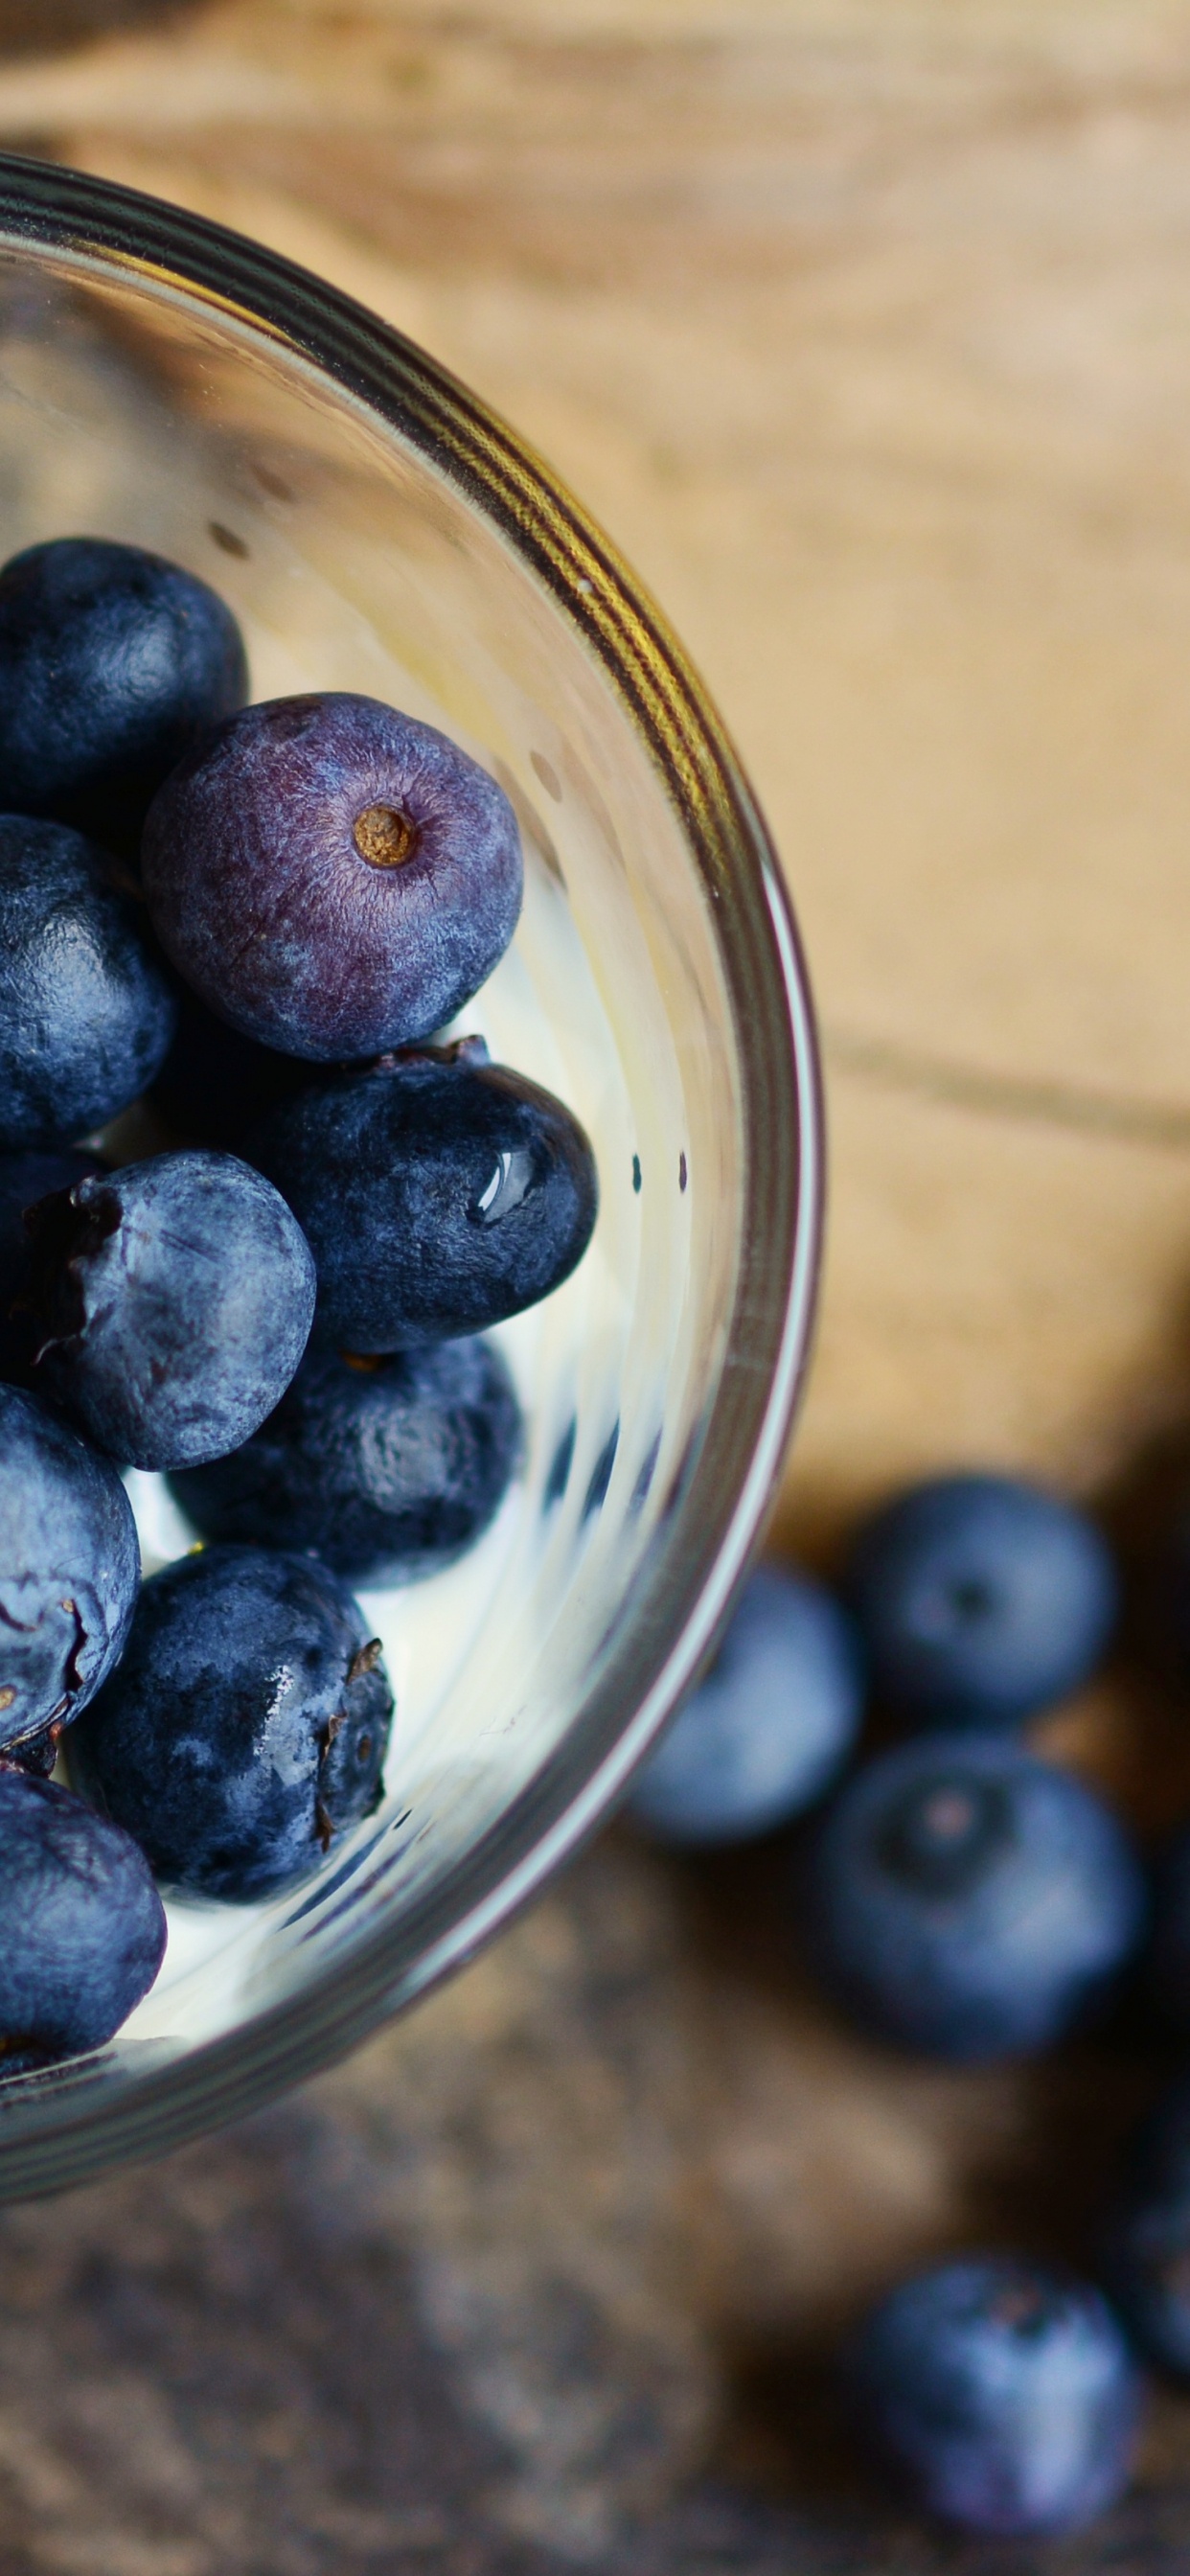 蓝莓, 食品, 梅斯皮诺亚, 营养, 健康 壁纸 1242x2688 允许